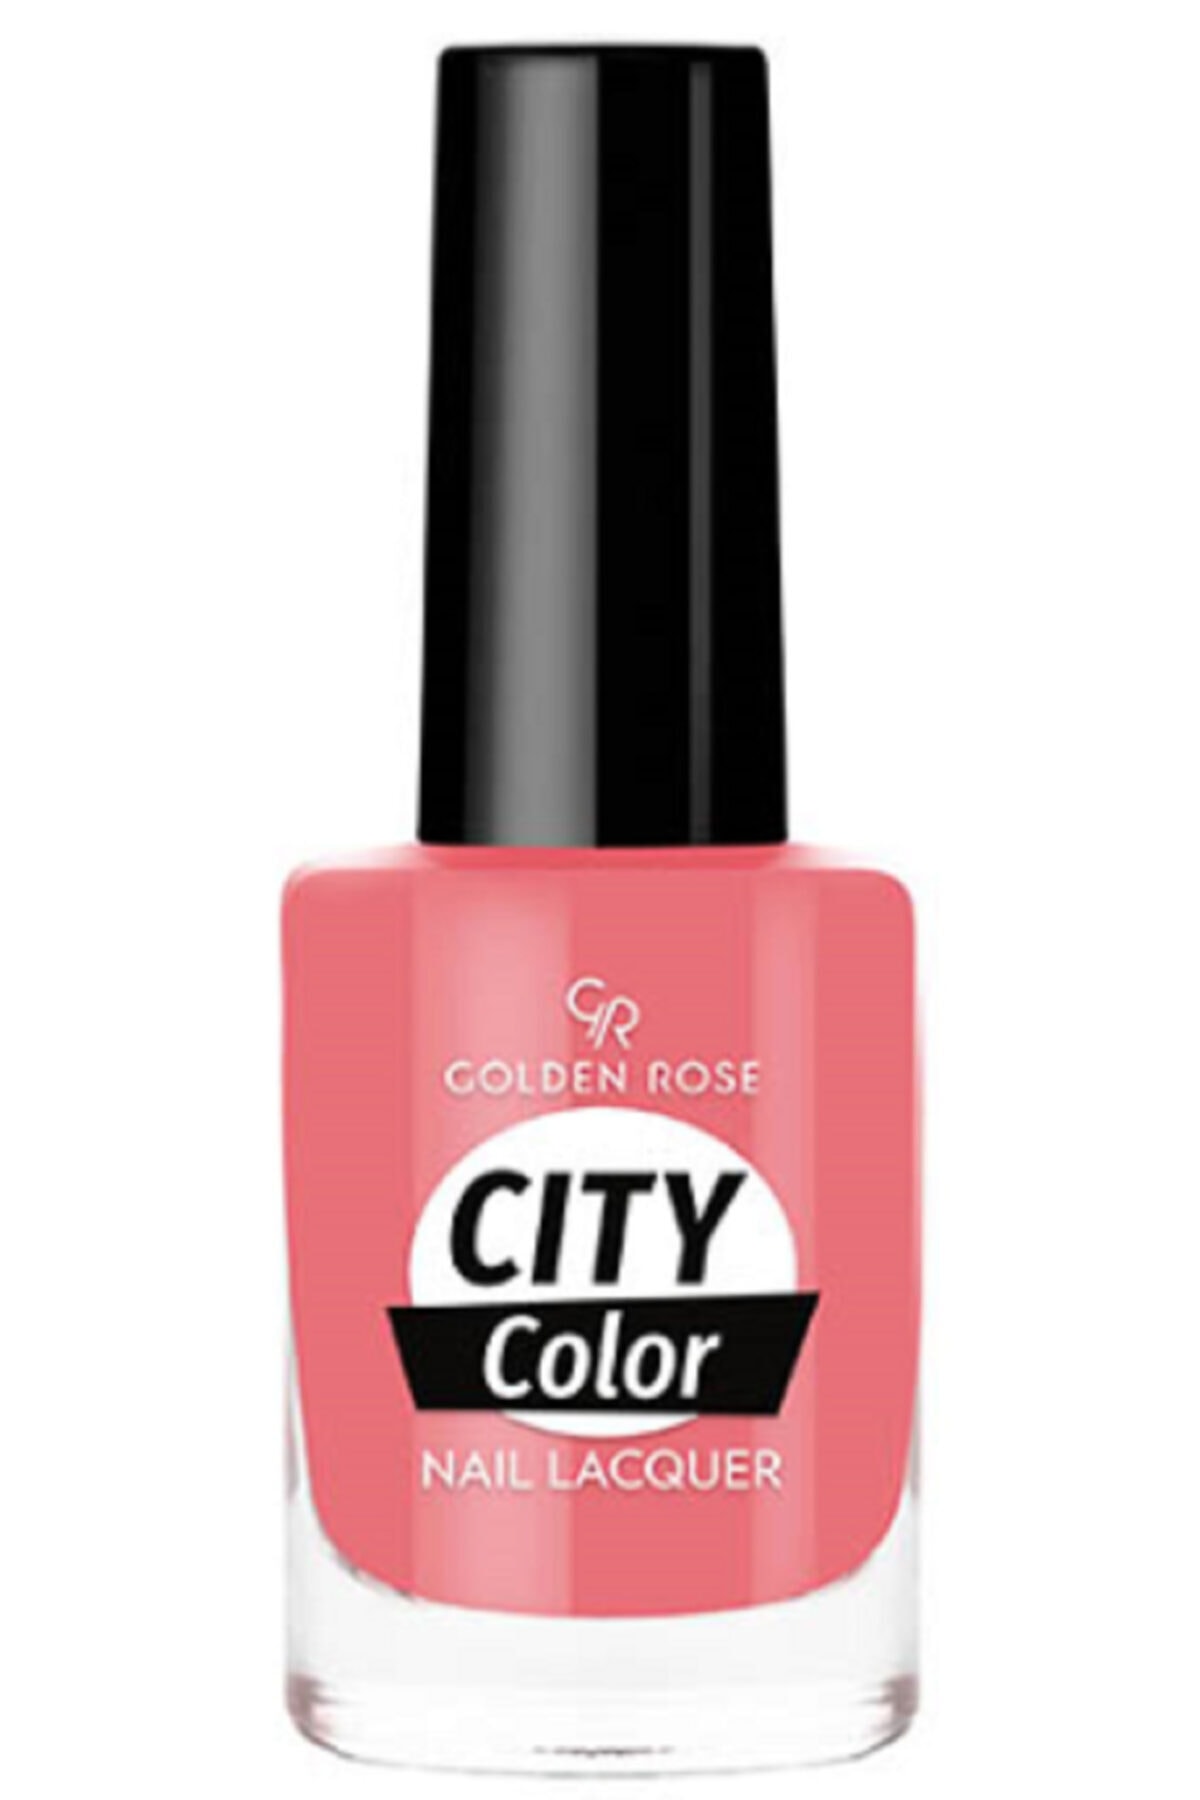 لاک ناخن سیتی کالر City color رنگ صورتی کالباسی شماره 75 گلدن رز Golden Rose